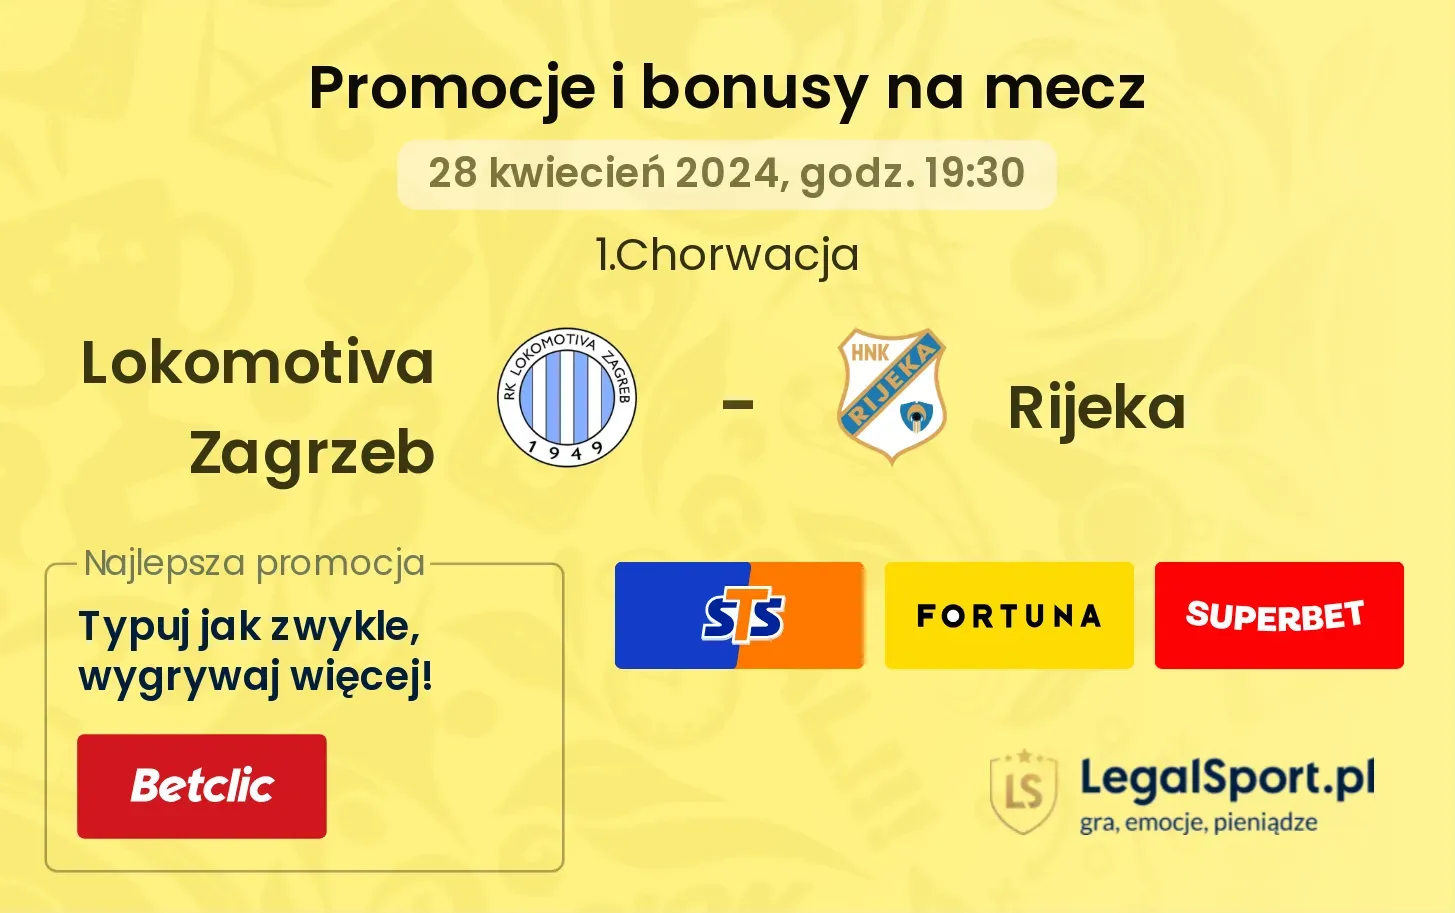 Lokomotiva Zagrzeb - Rijeka promocje bonusy na mecz